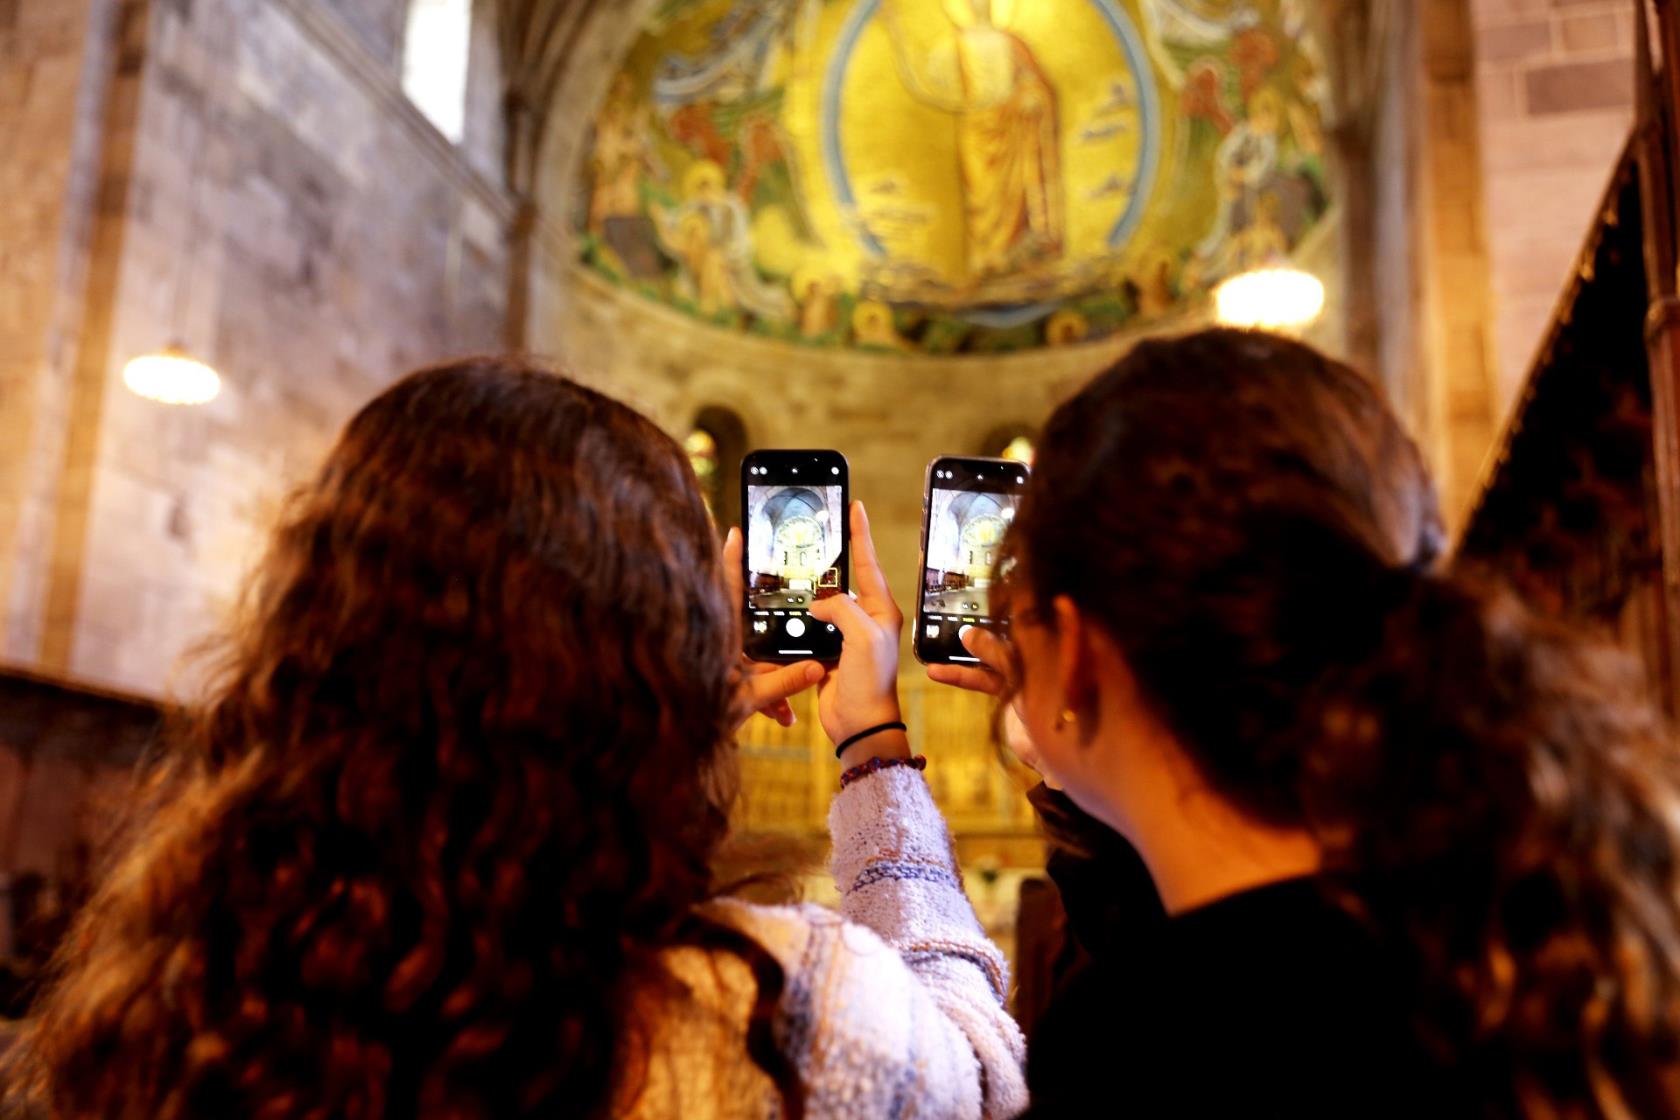 Två flickor står med ryggen mot kameran och fotograferar i ett kyrkorum med sina mobiler.